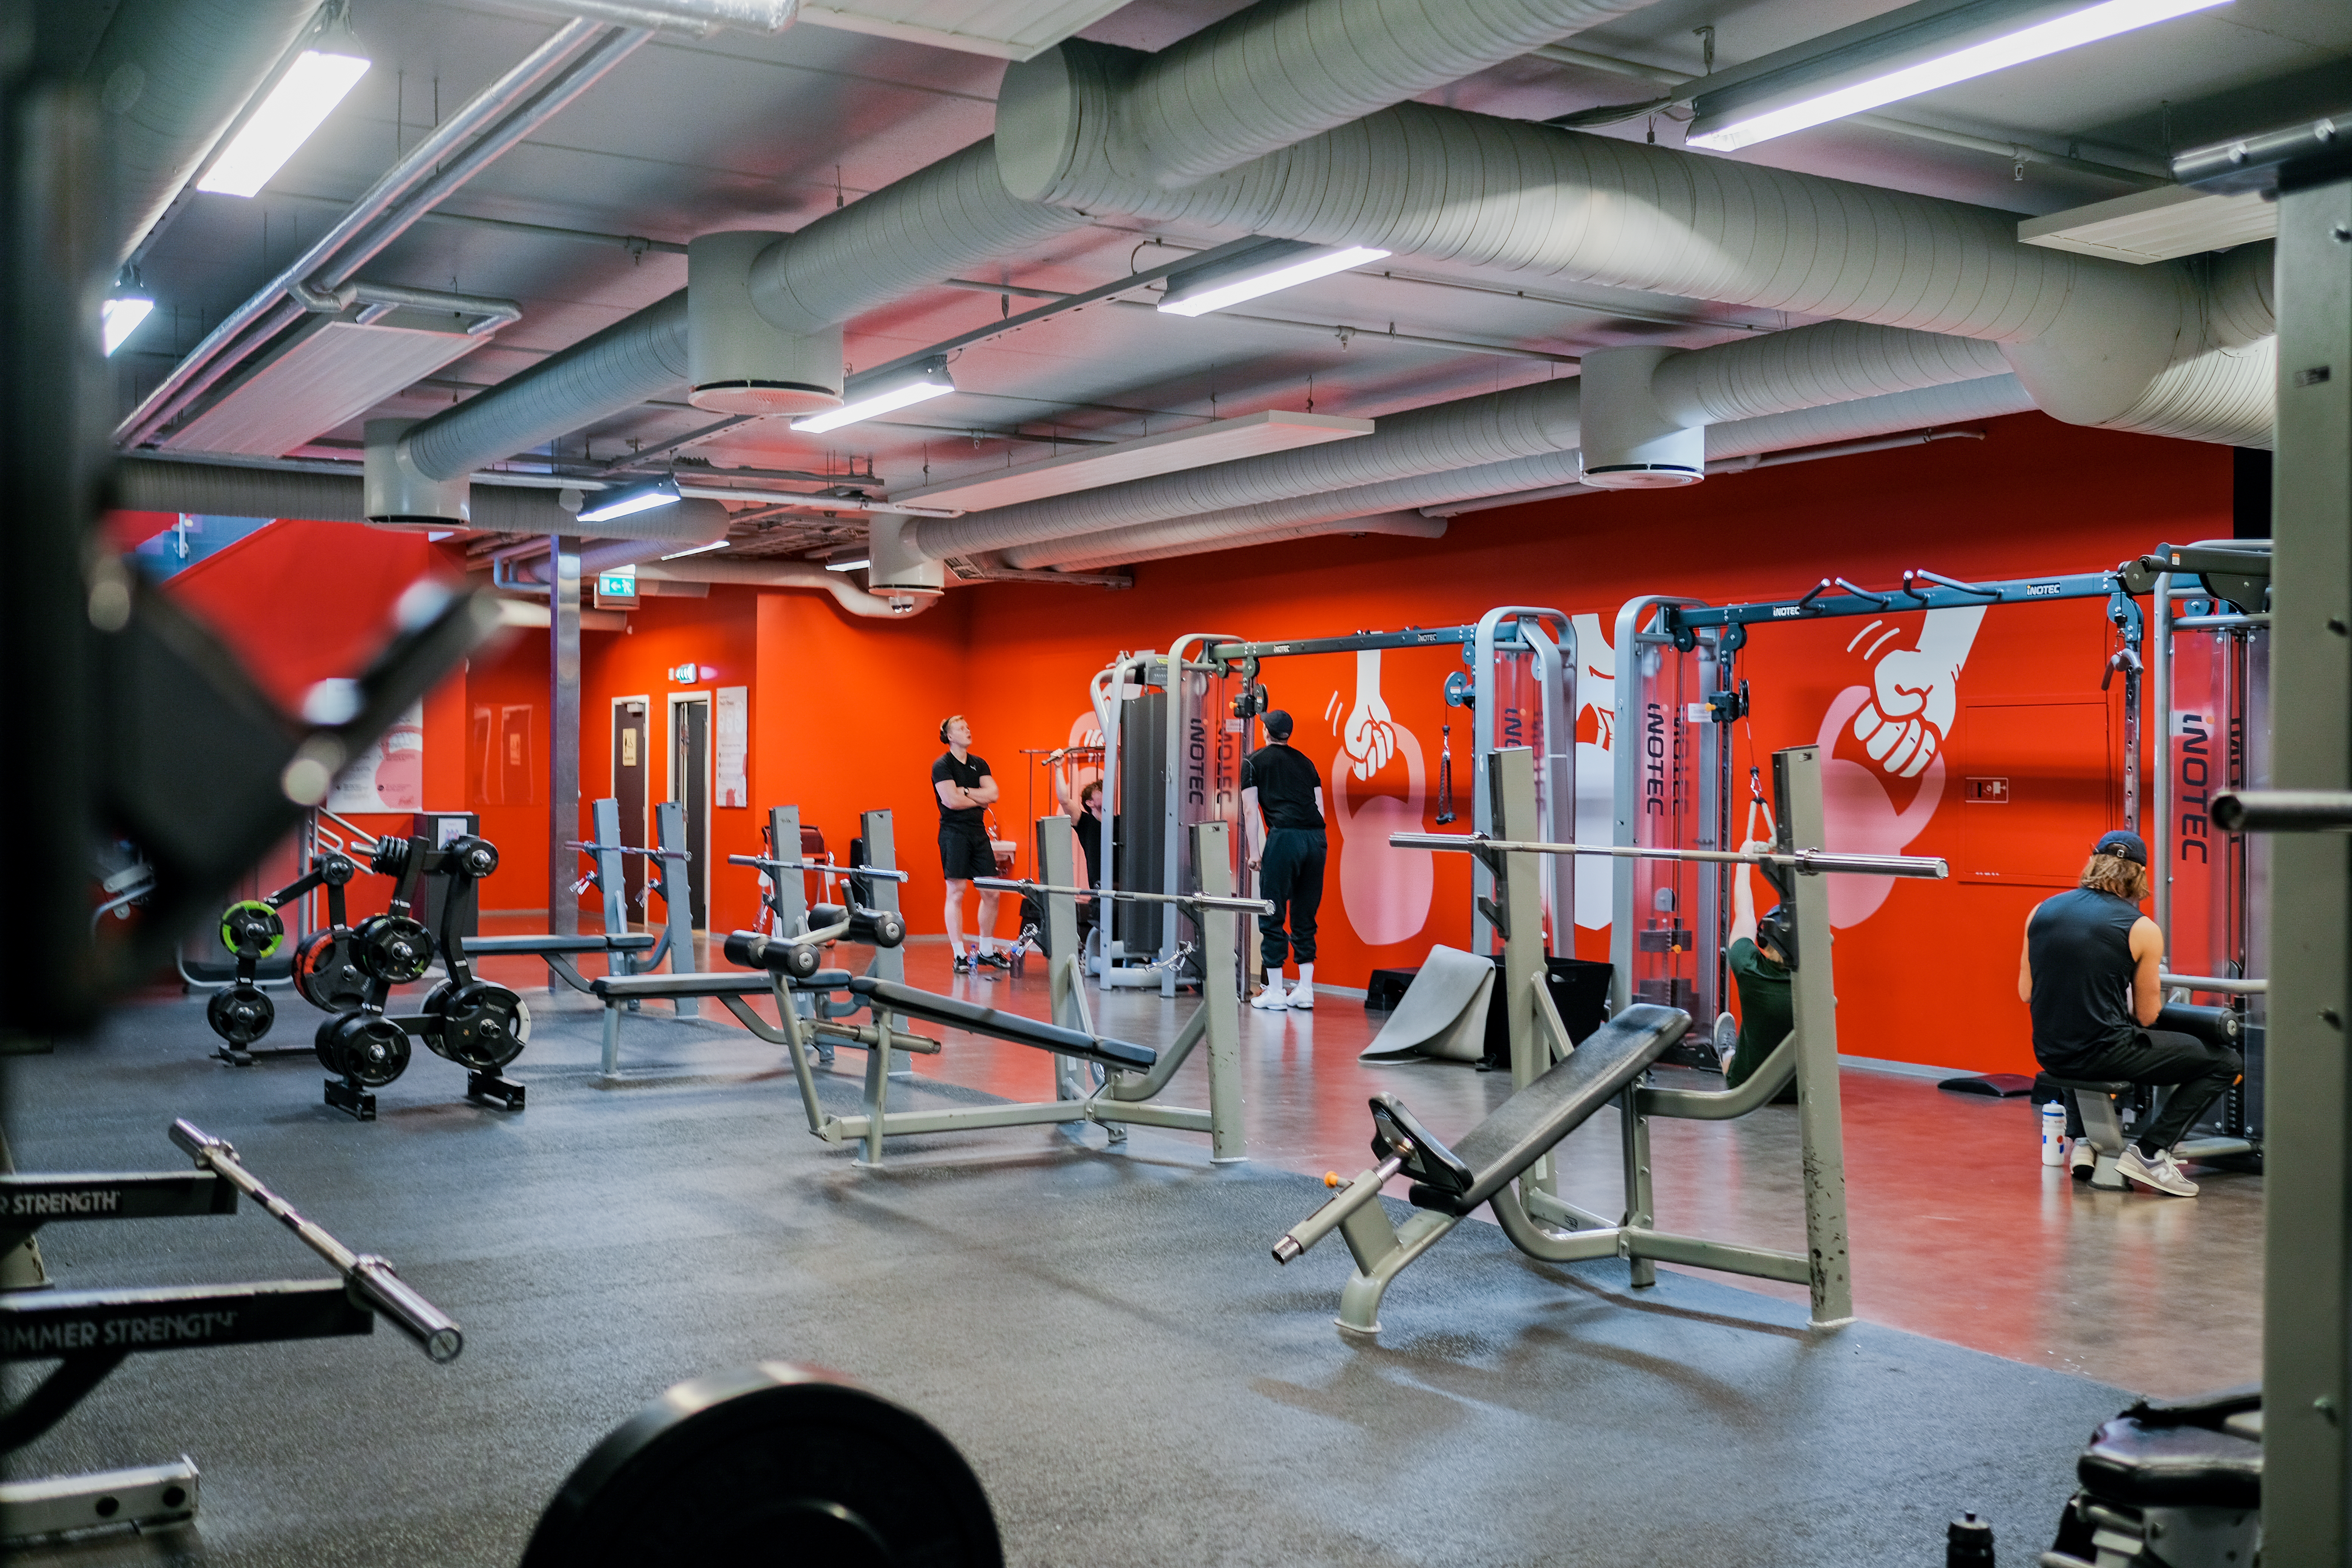 Utforsk våre frivektsområder for effektiv styrketrening på Fresh Fitness treningssenter i Kristiansand sentrum. Med et bredt utvalg av vekter og utstyr kan du skape en skreddersydd treningsopplevelse som passer dine behov og mål.